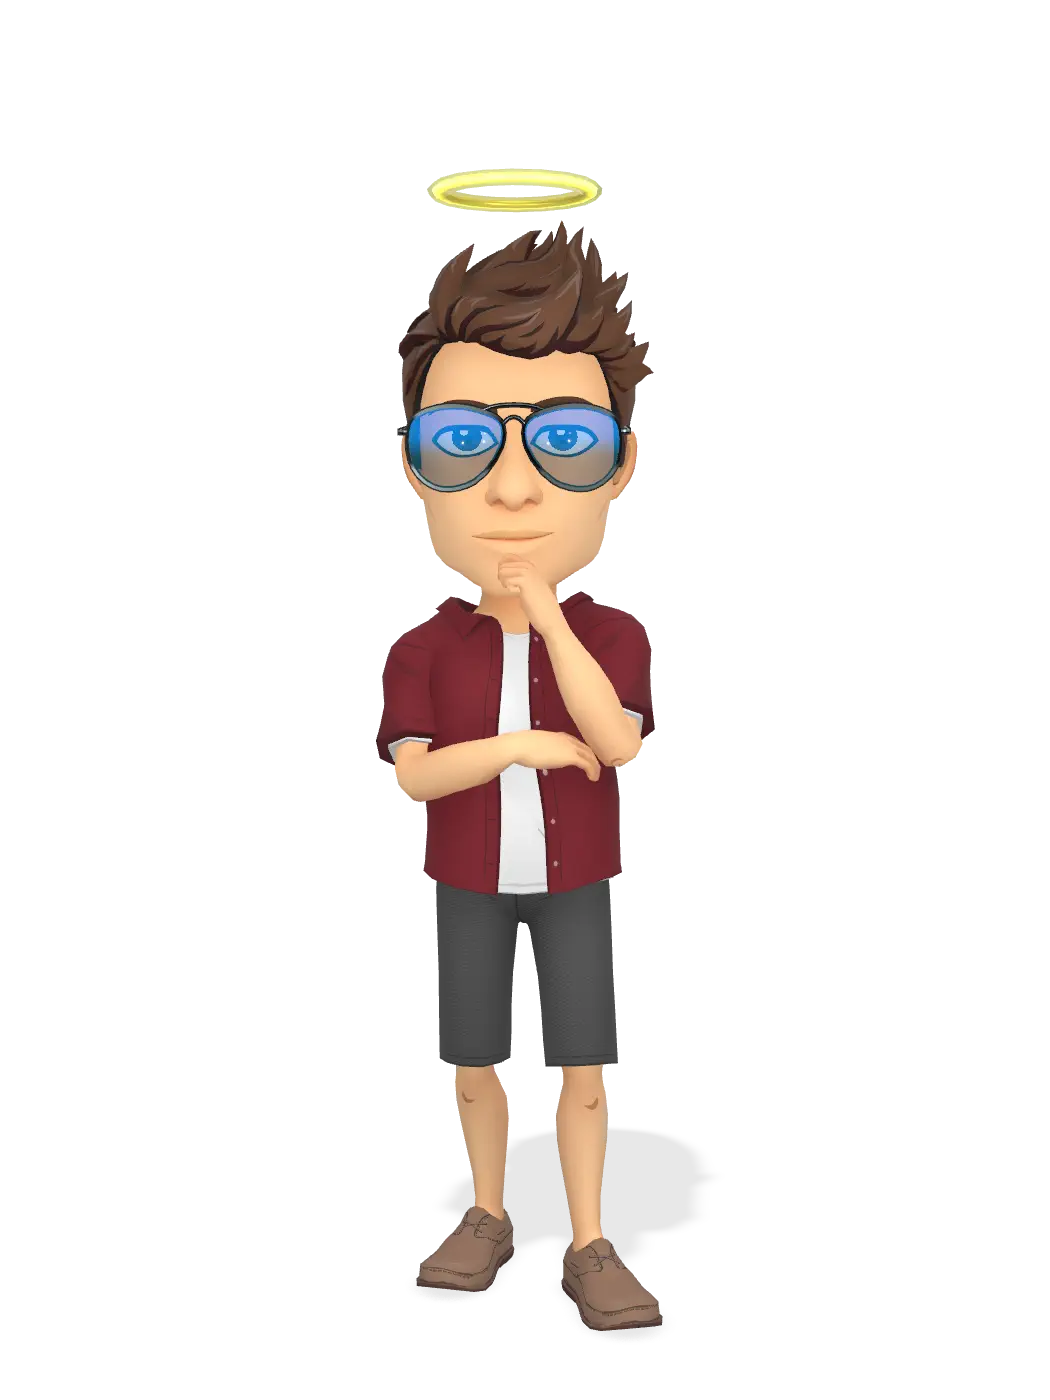 3D Bitmoji for itsrensb avatar